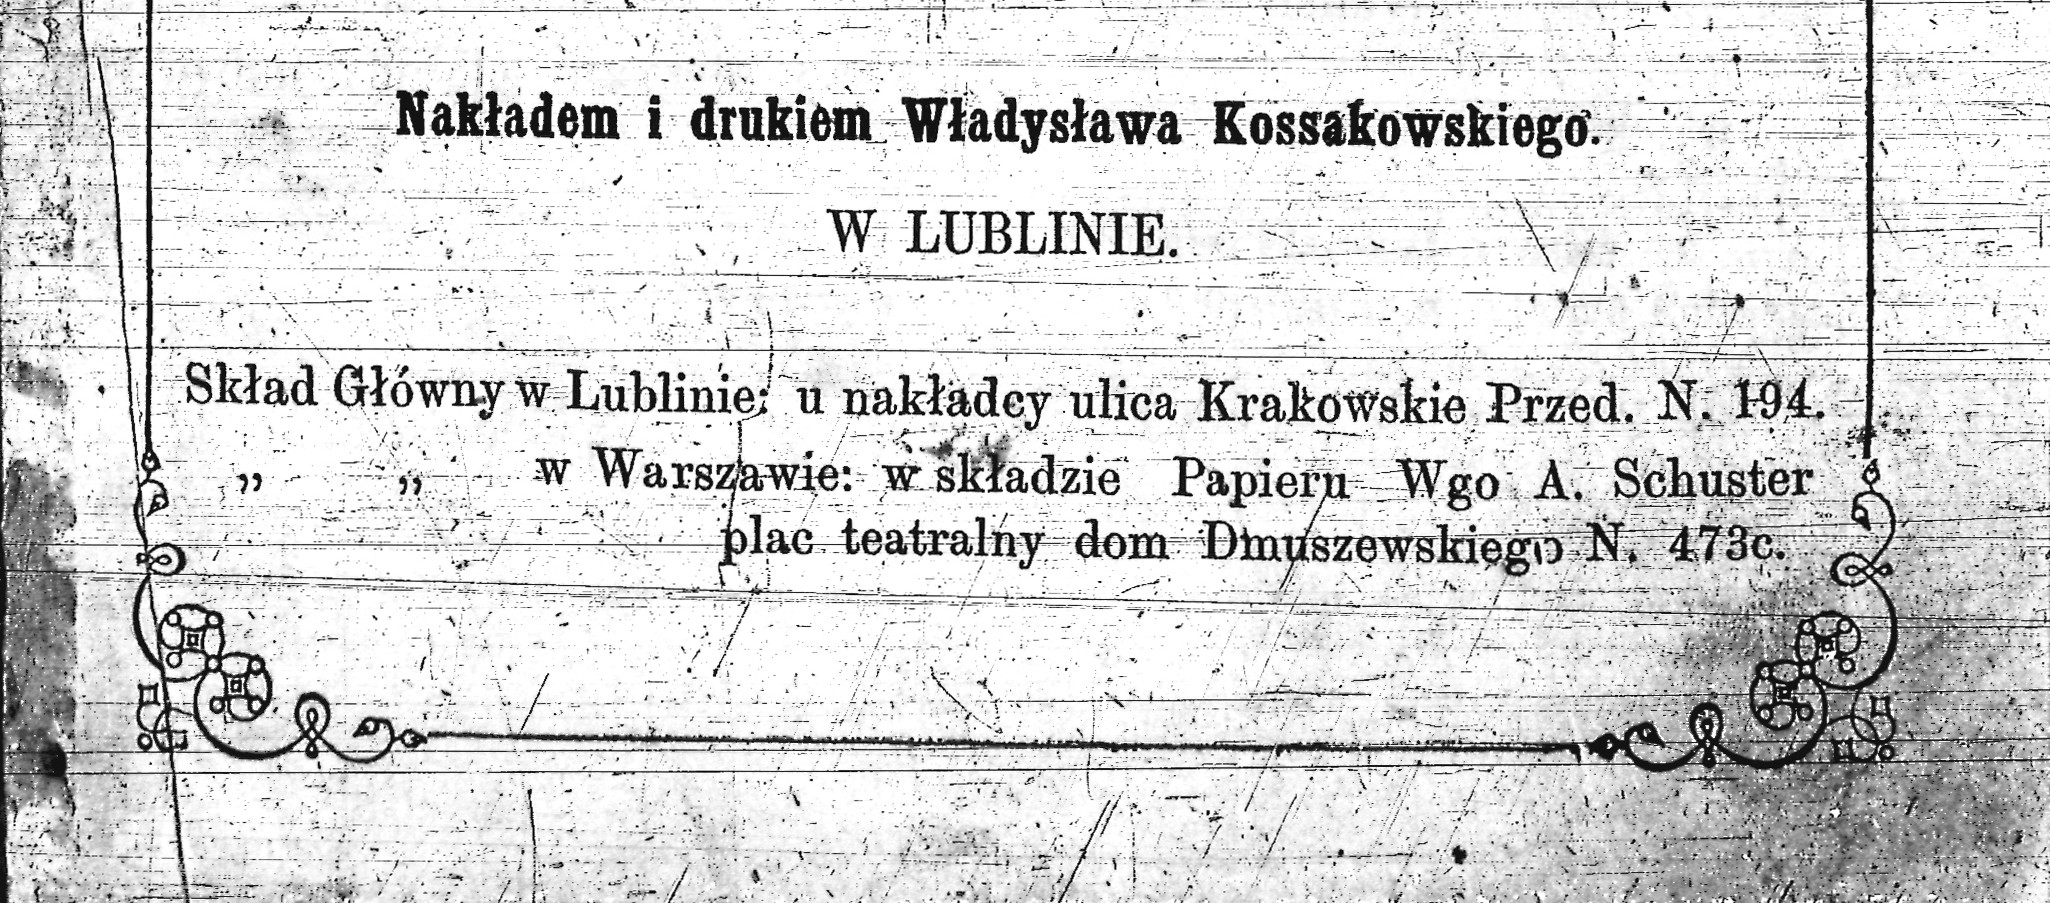 "Kalendarz Lubelski na rok1869" - fragment karty tytułowej z zapisem miejsca druku